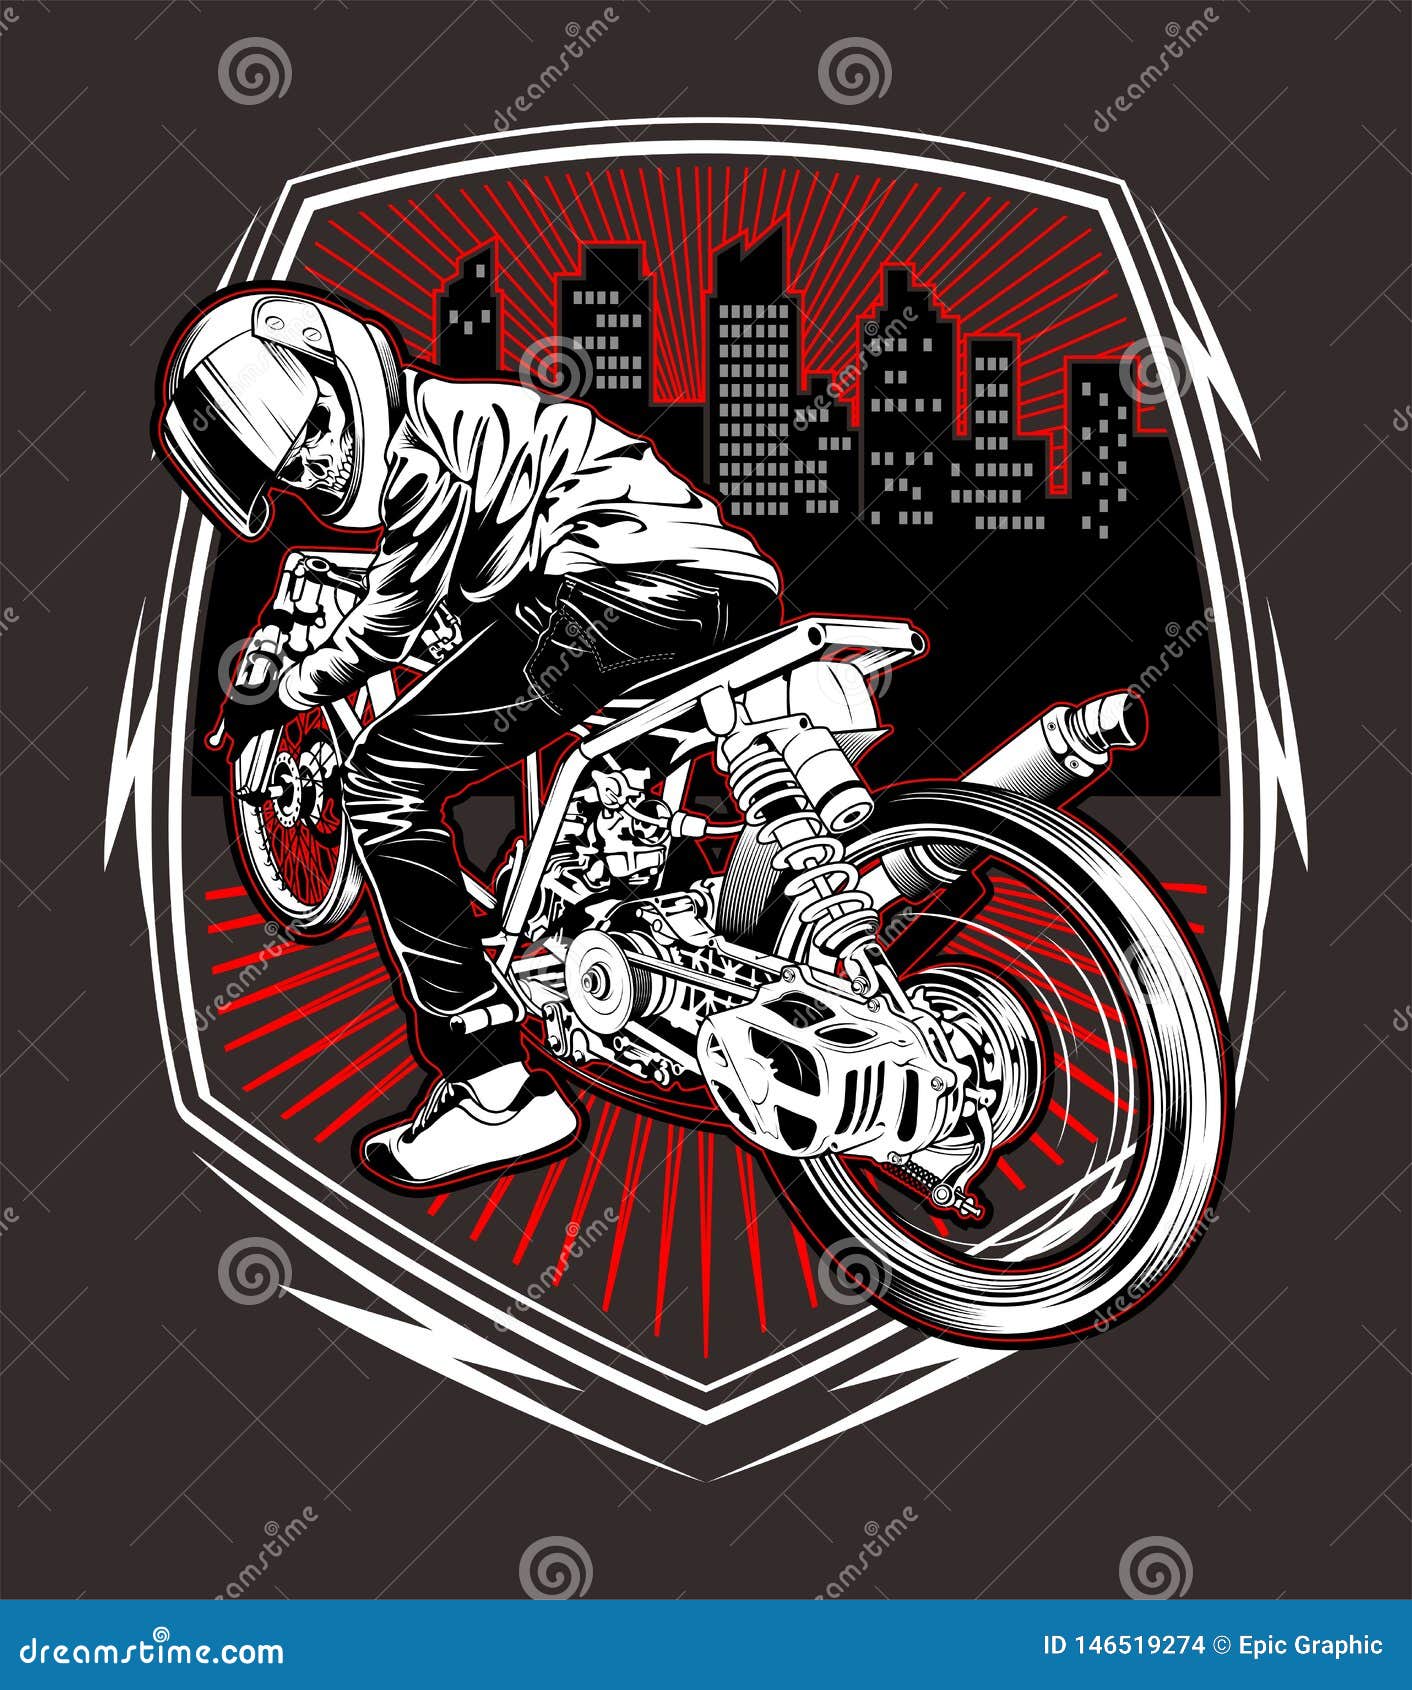 Motocross Motocicleta Desenhado Mão Ilustração Vetorial imagem